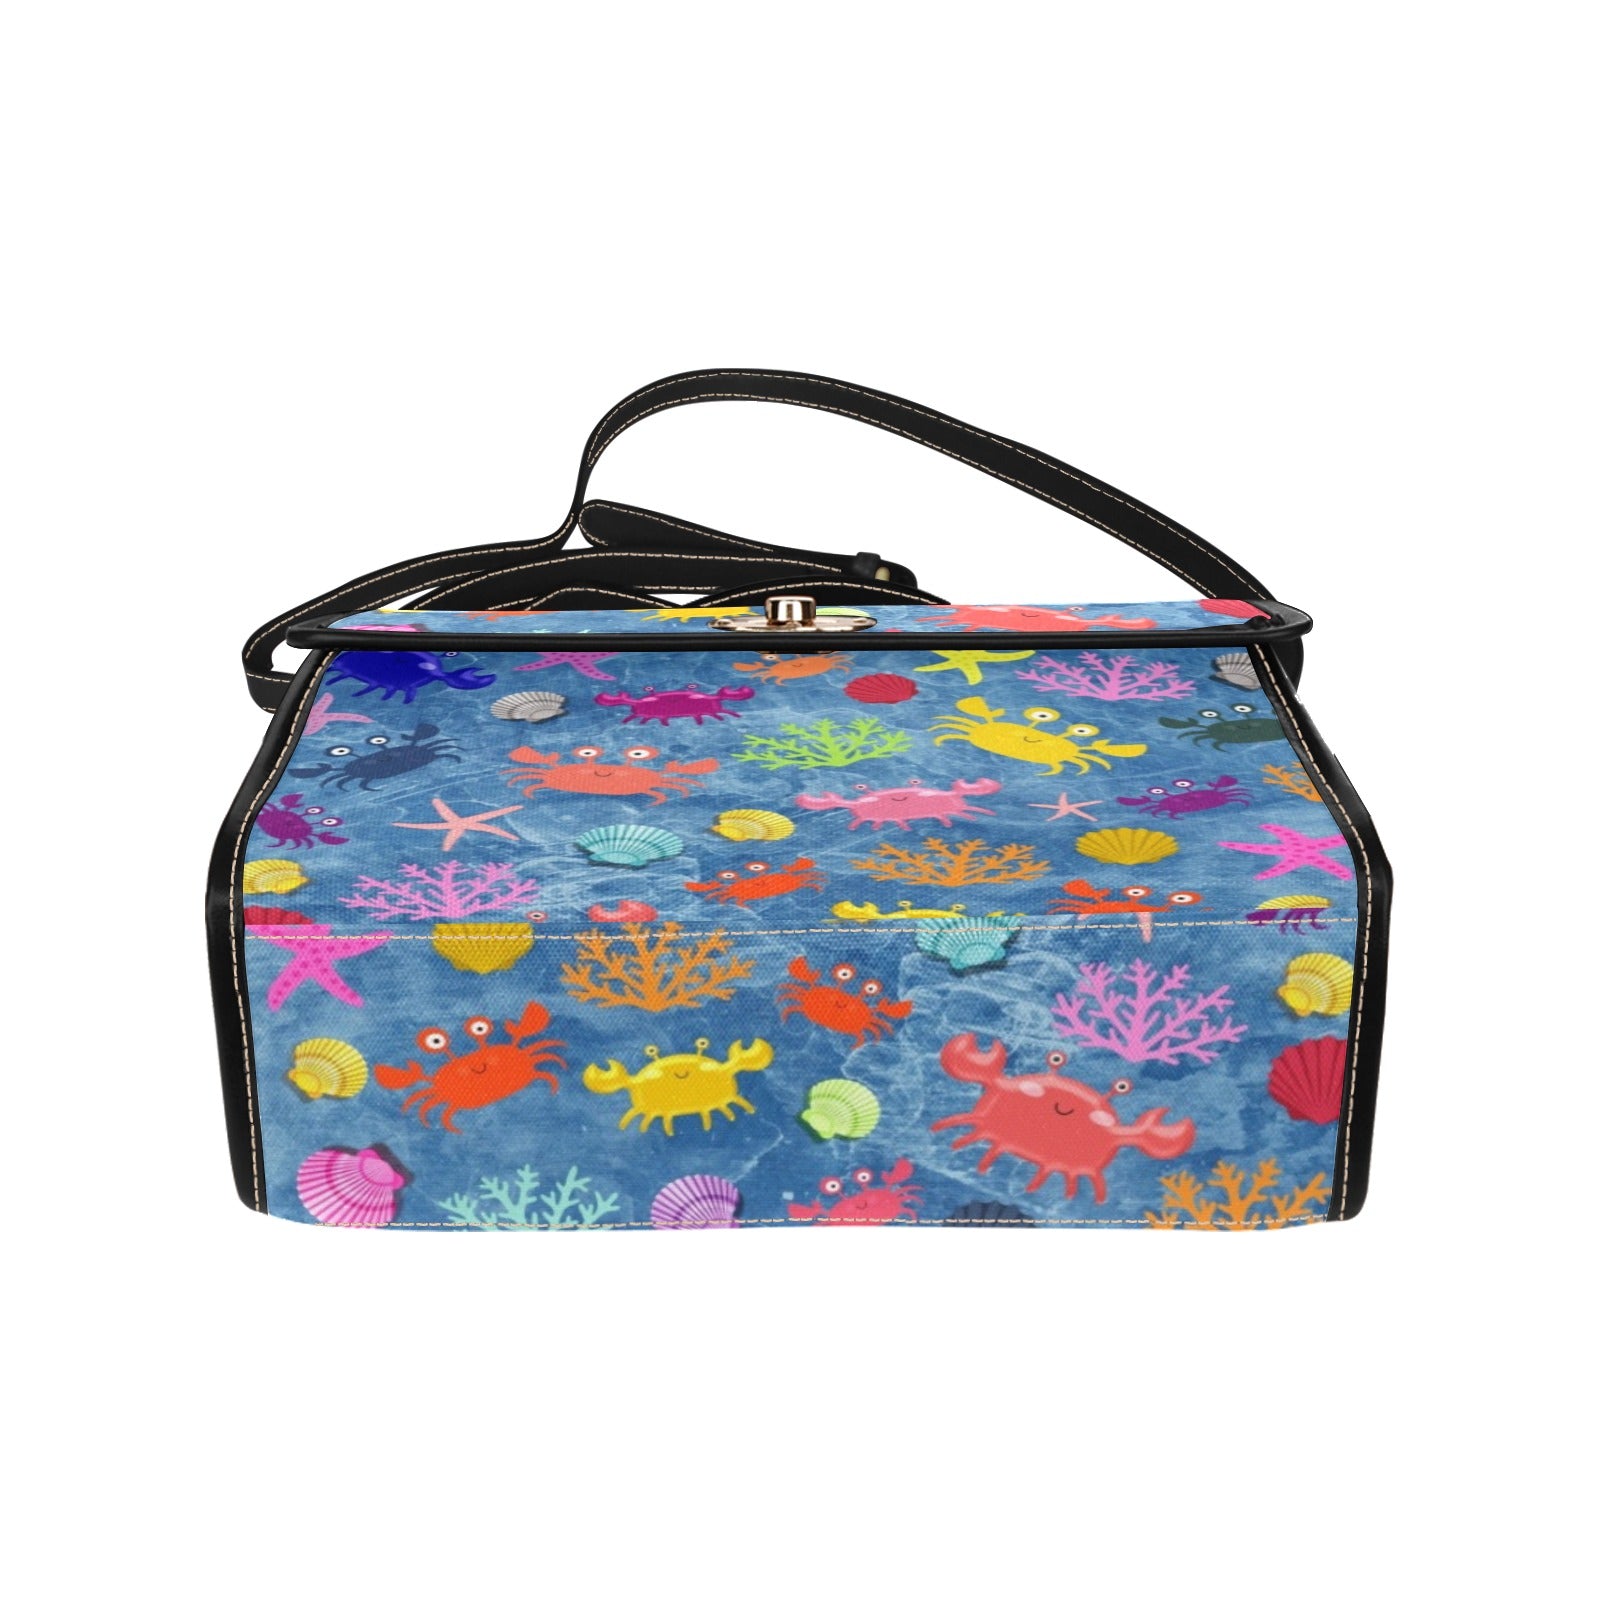 Cute Crab - Waterproof Canvas Handbag